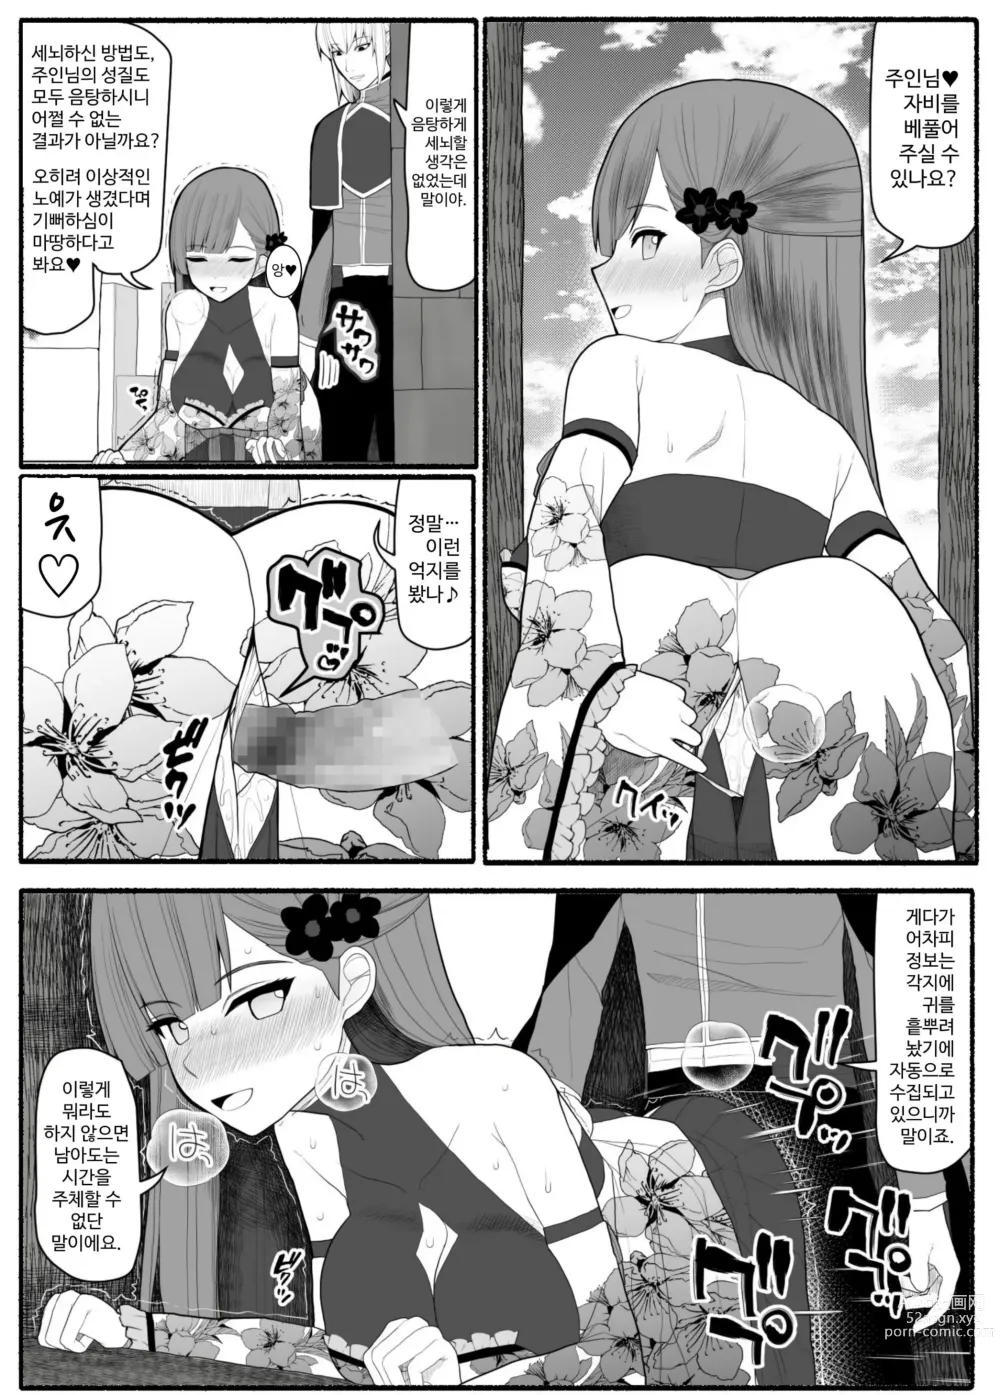 Page 50 of doujinshi Shikyuu Majo VS Joukyuu Majin